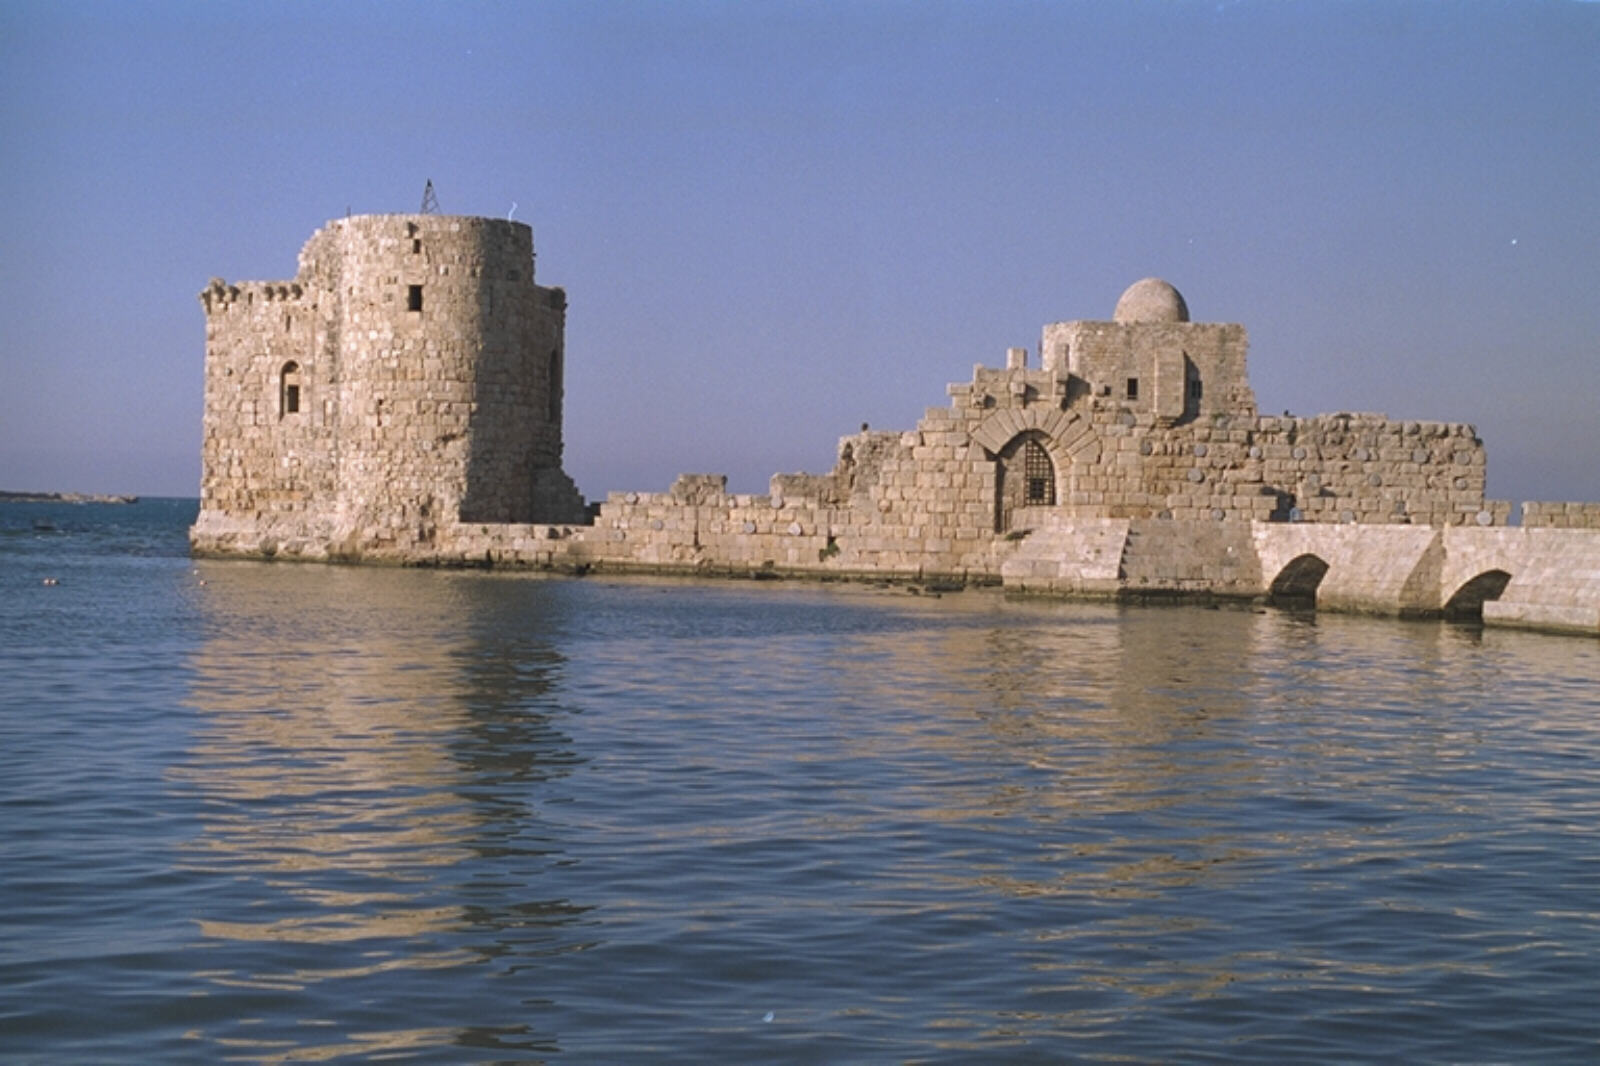 The sea castle at Sidon, Lebanon